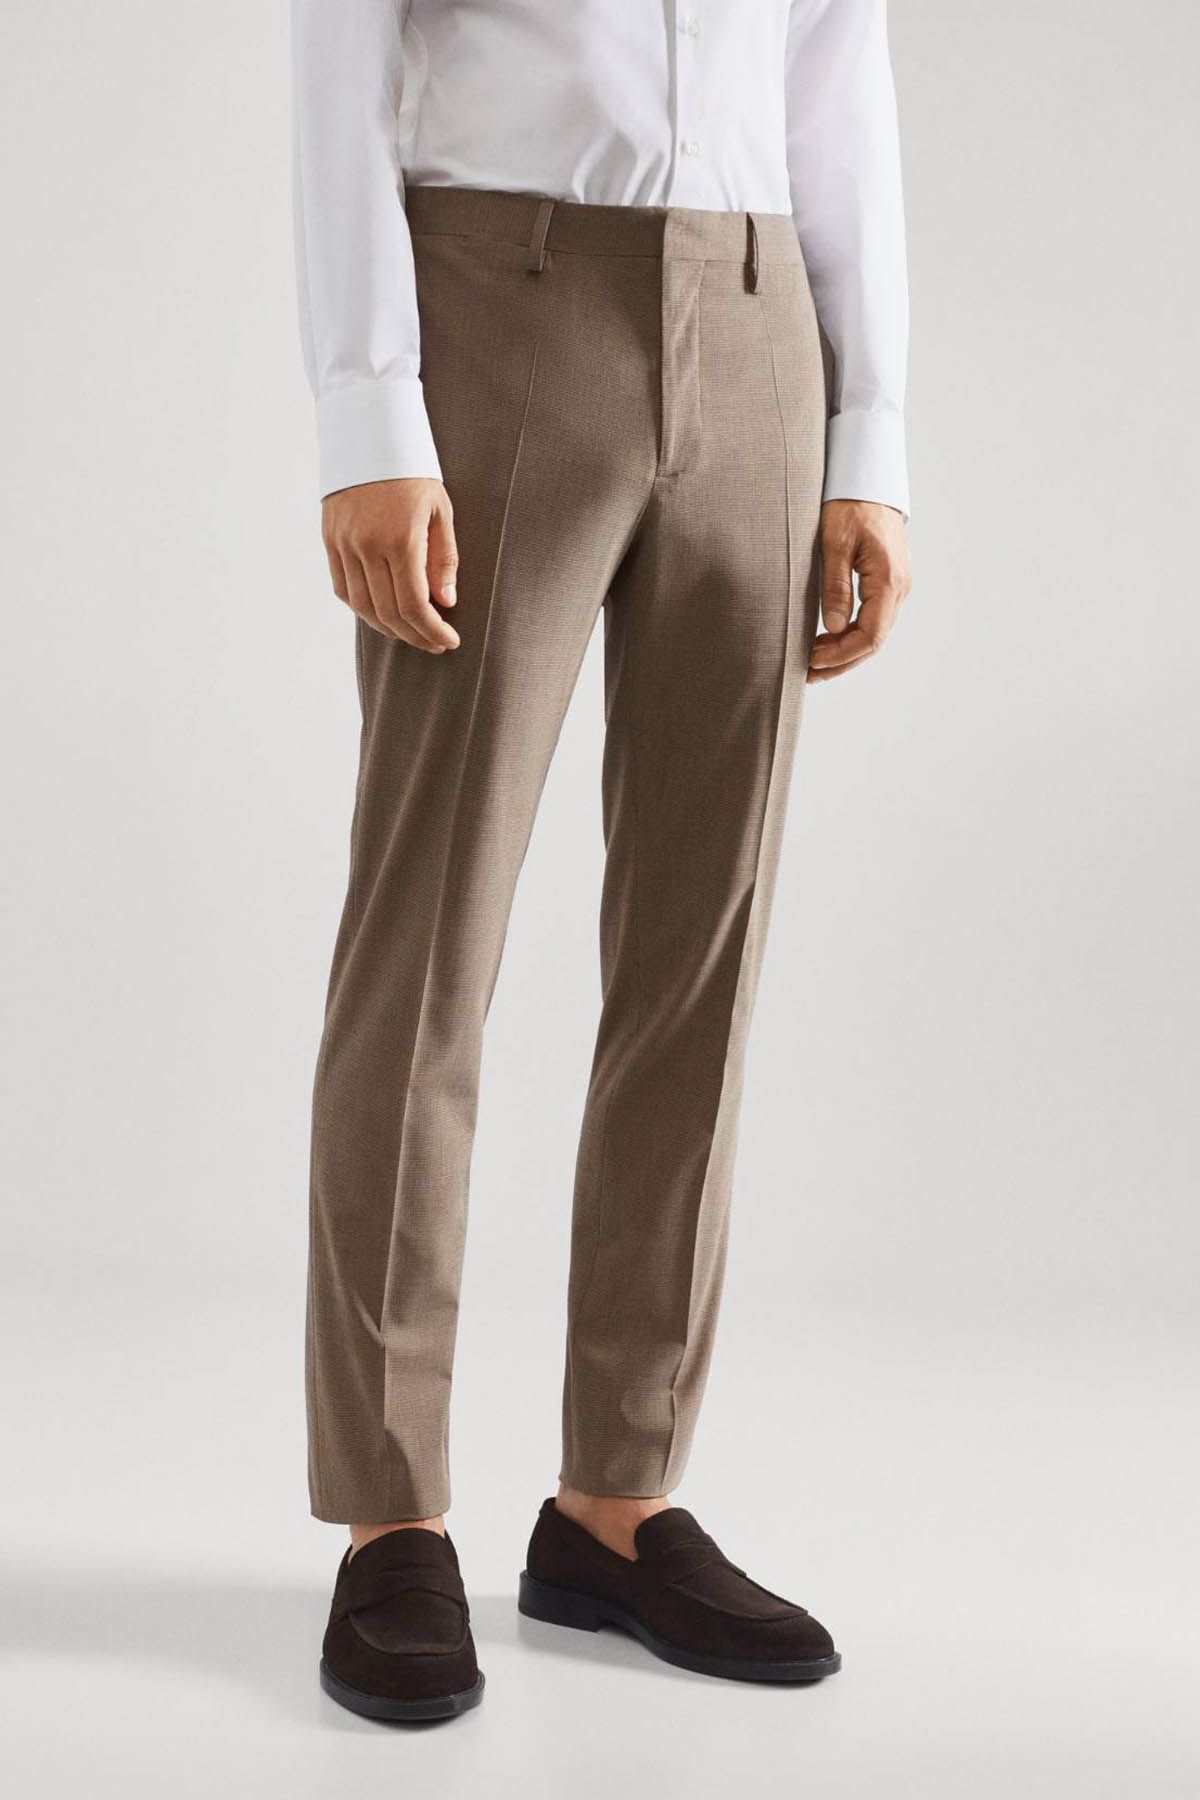 MANGO Micro Houndstooth Wool-Blend Slim-Fit Trousers in Beige | Endource